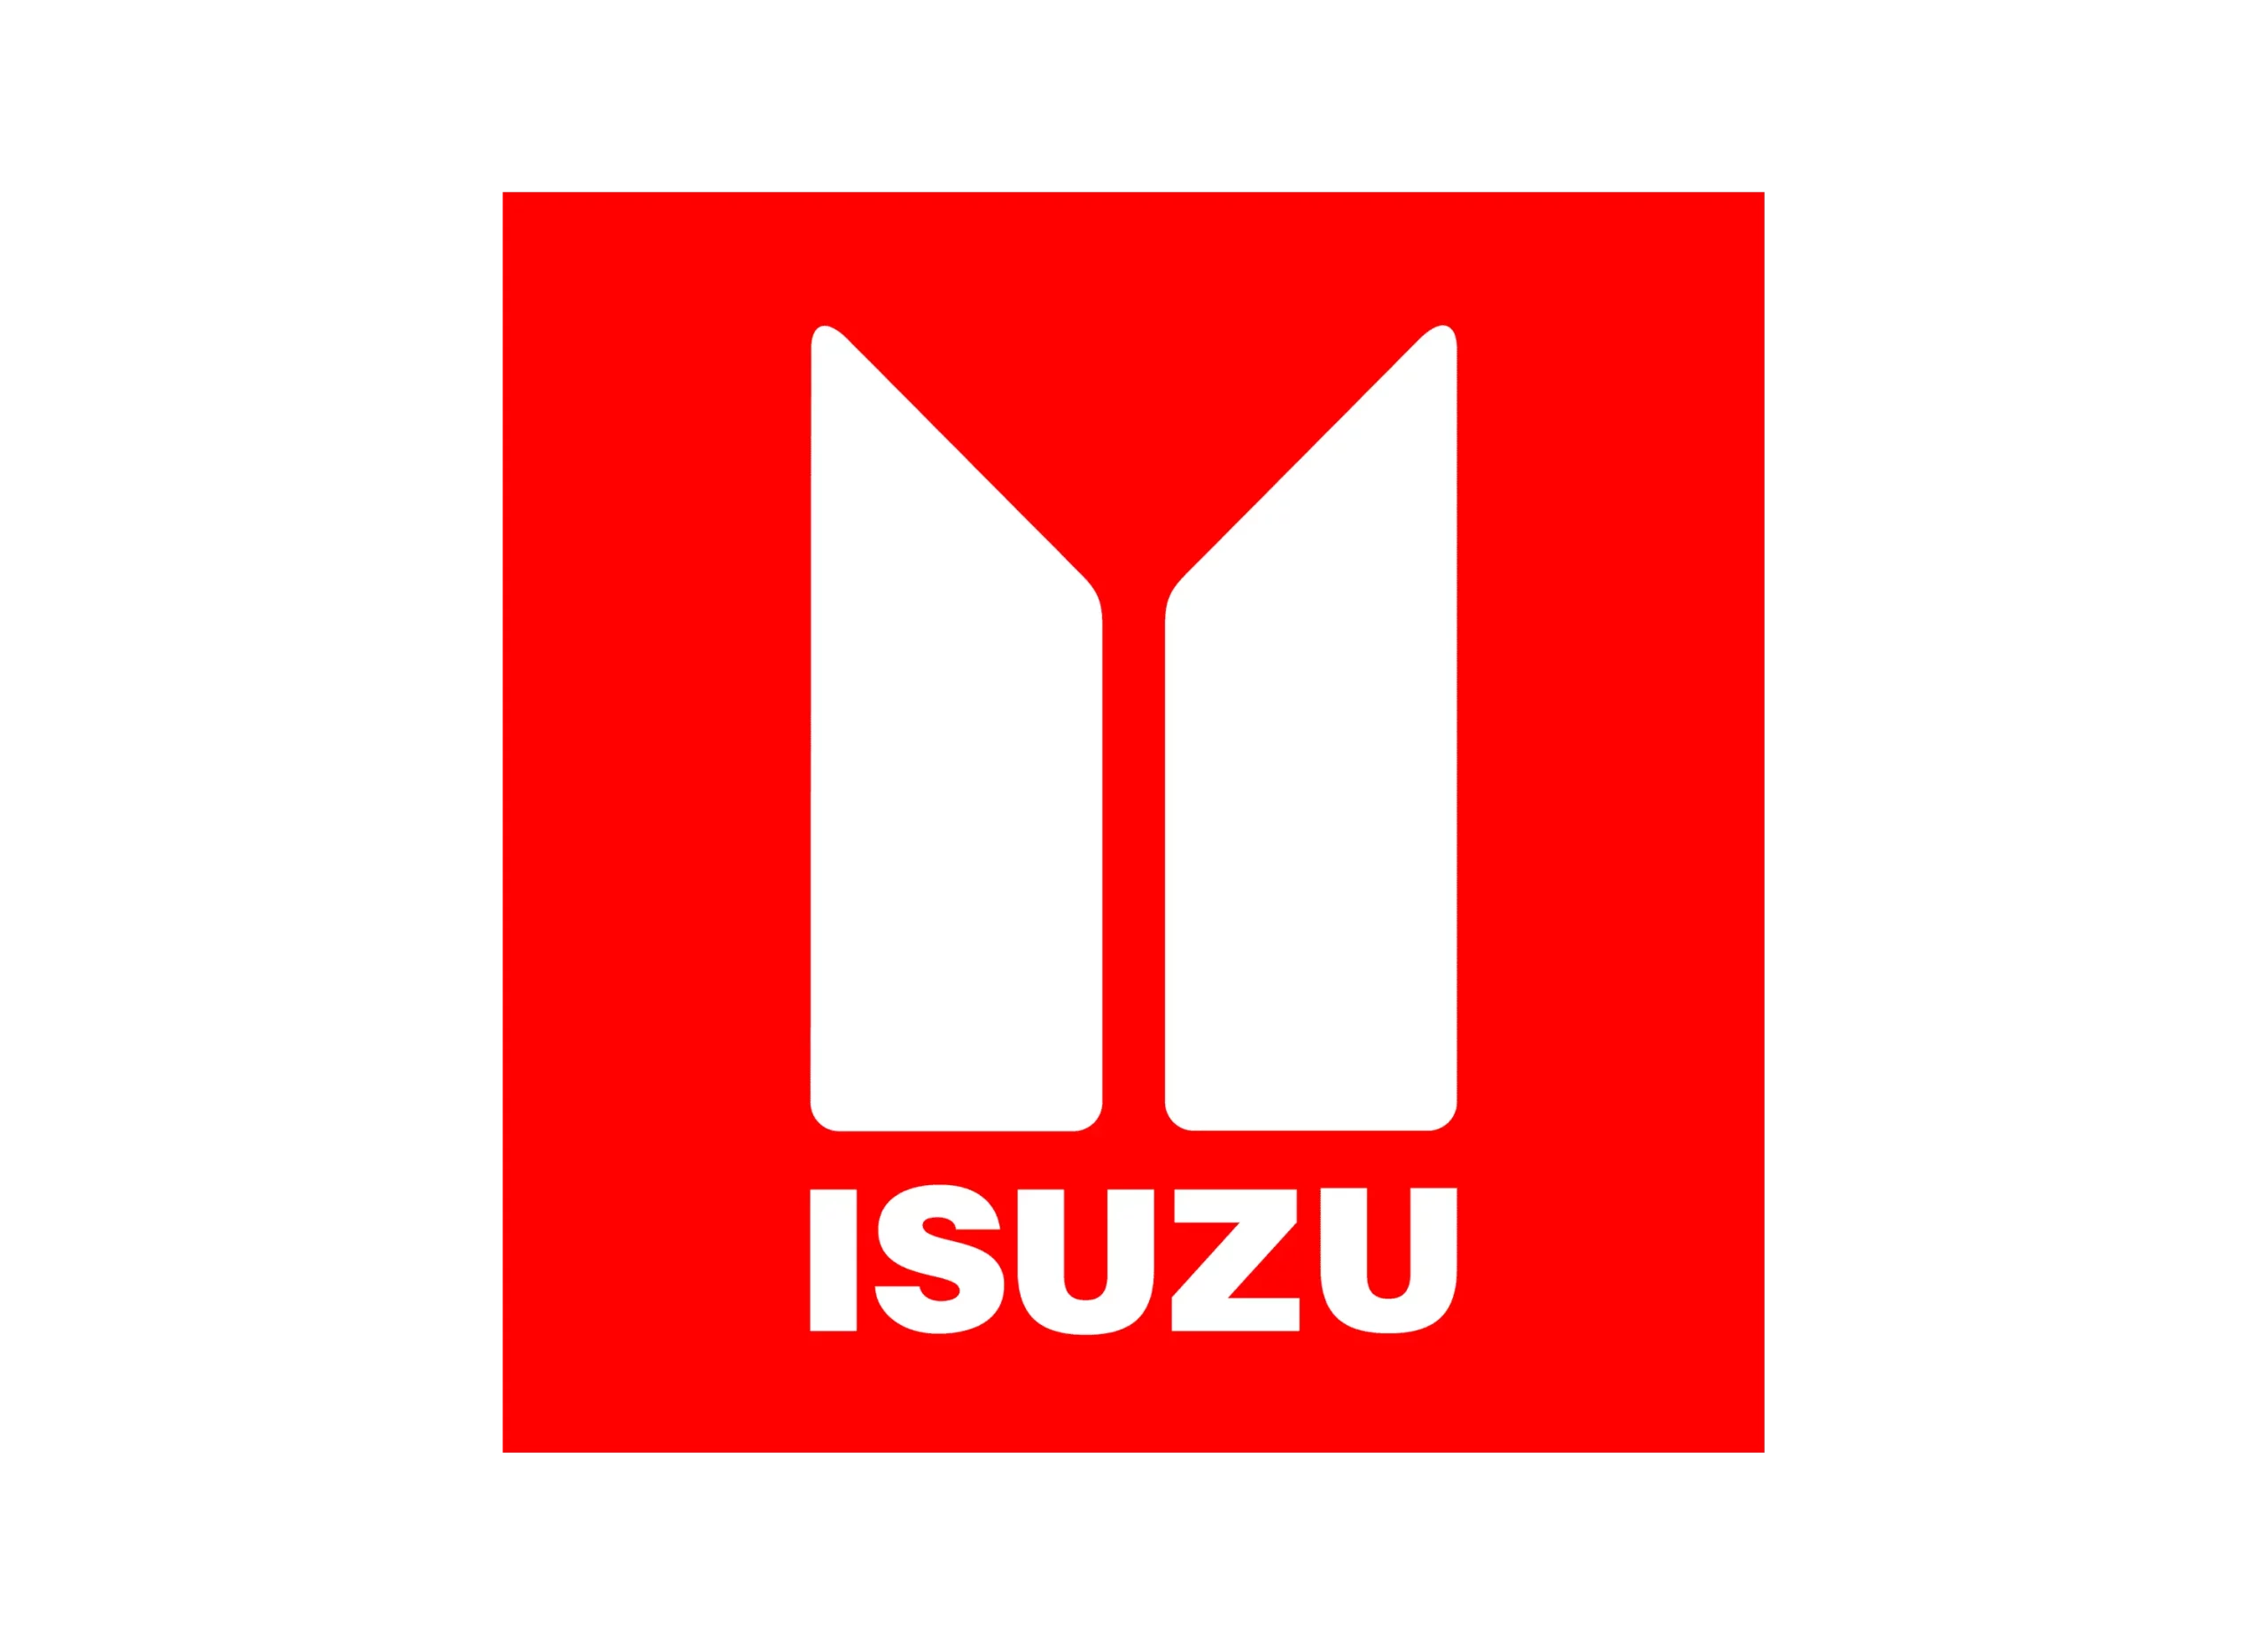 Isuzu logo 1974-1991